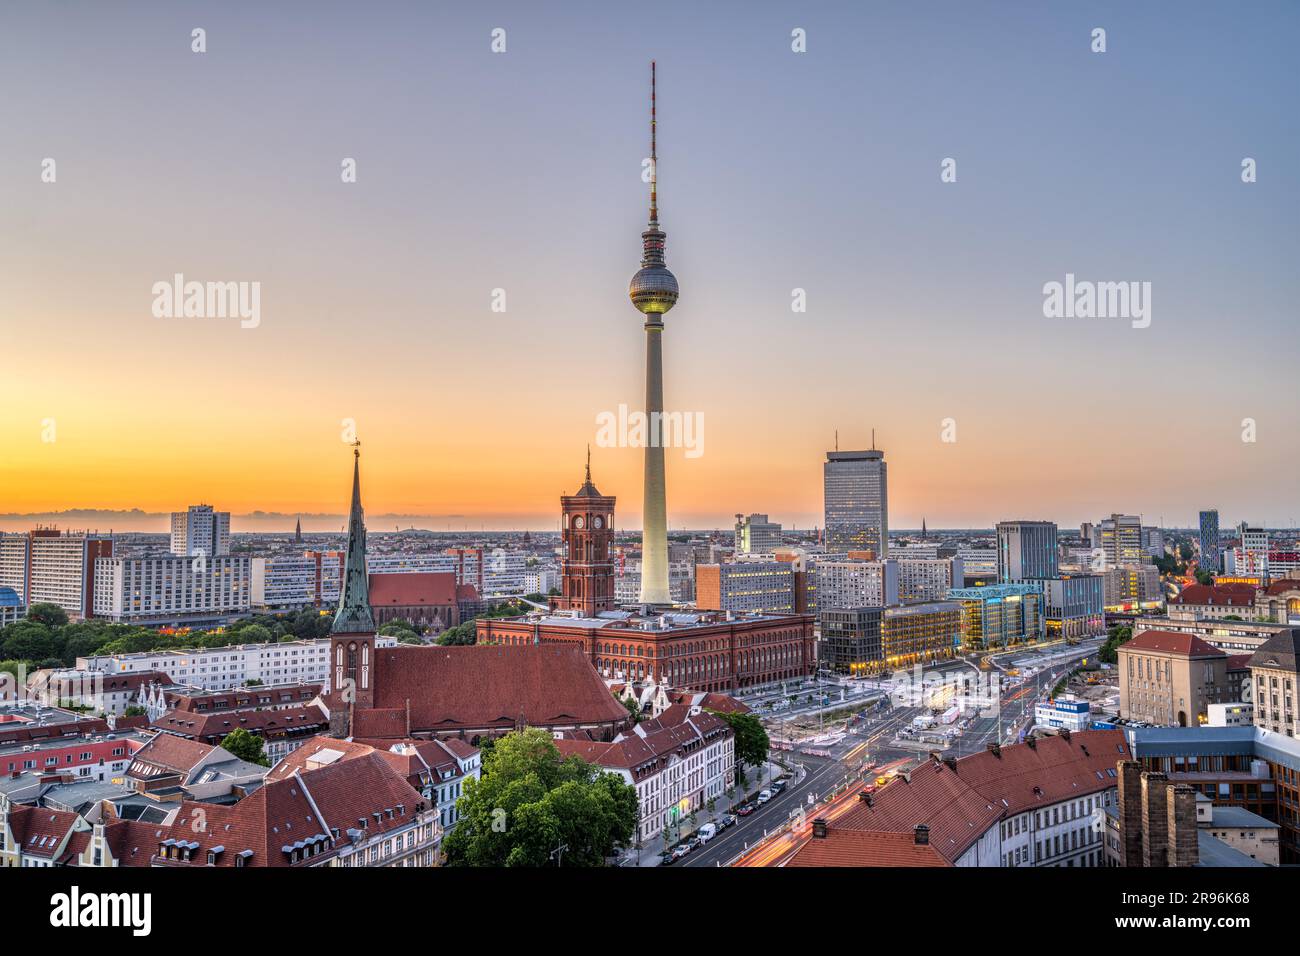 Das Zentrum von Berlin mit dem berühmten Fernsehturm nach Sonnenuntergang Stockfoto